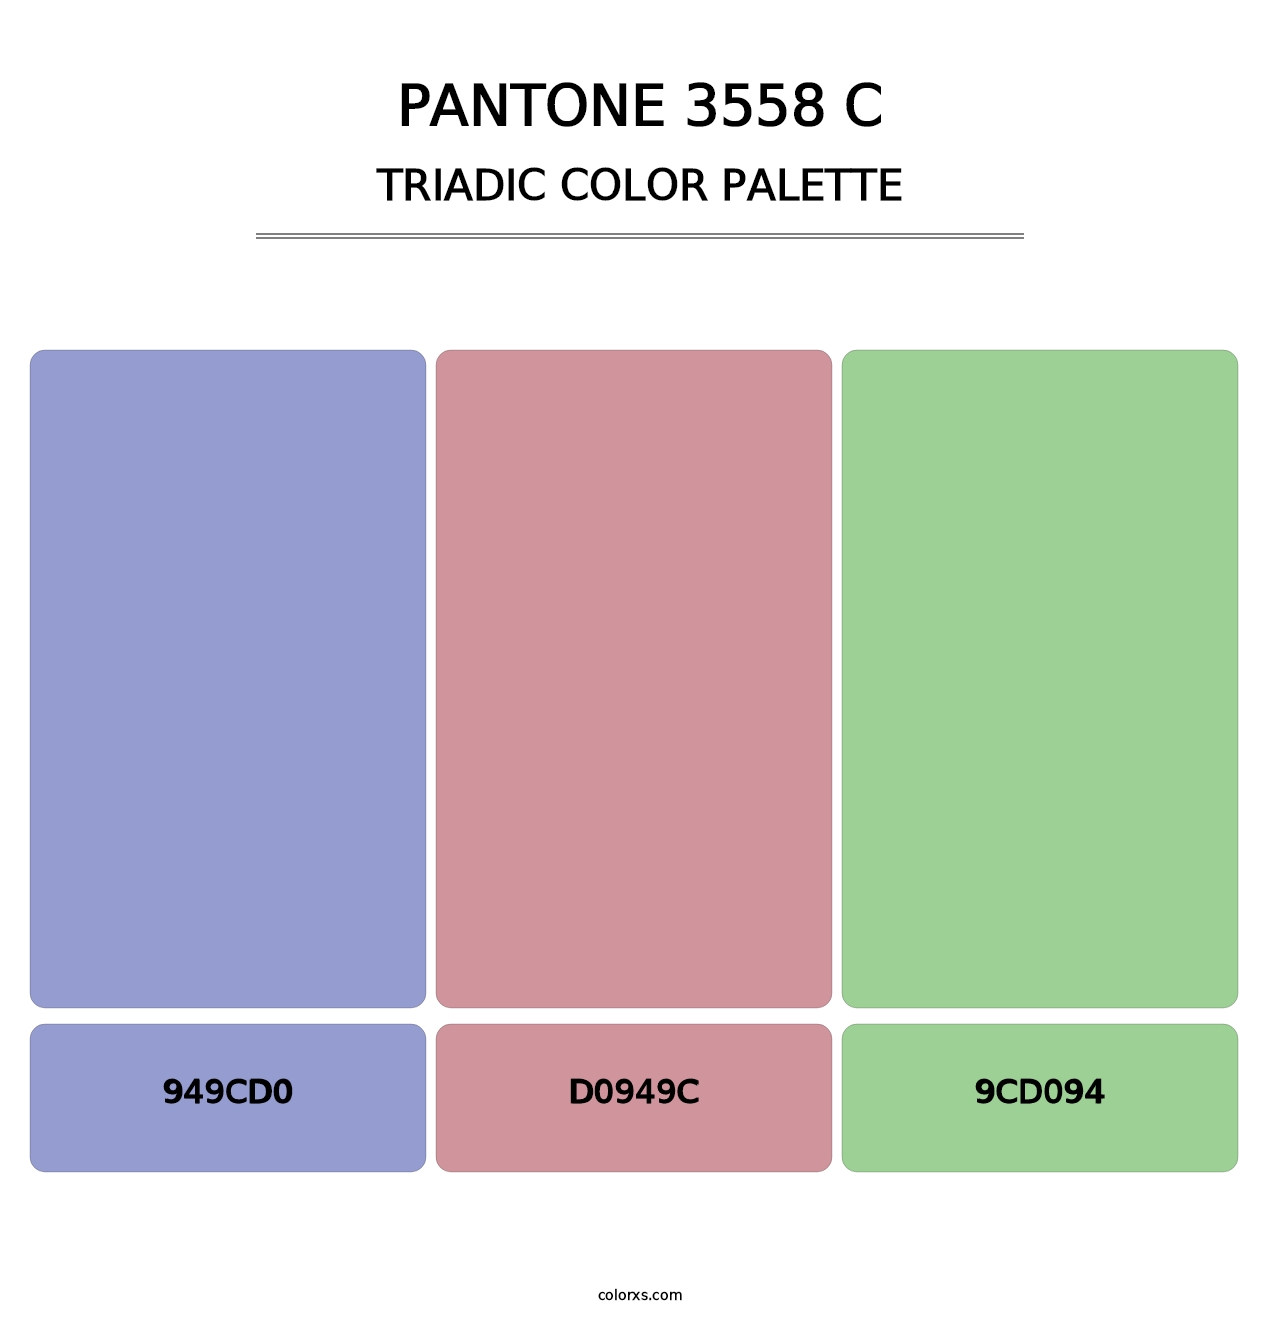 PANTONE 3558 C - Triadic Color Palette